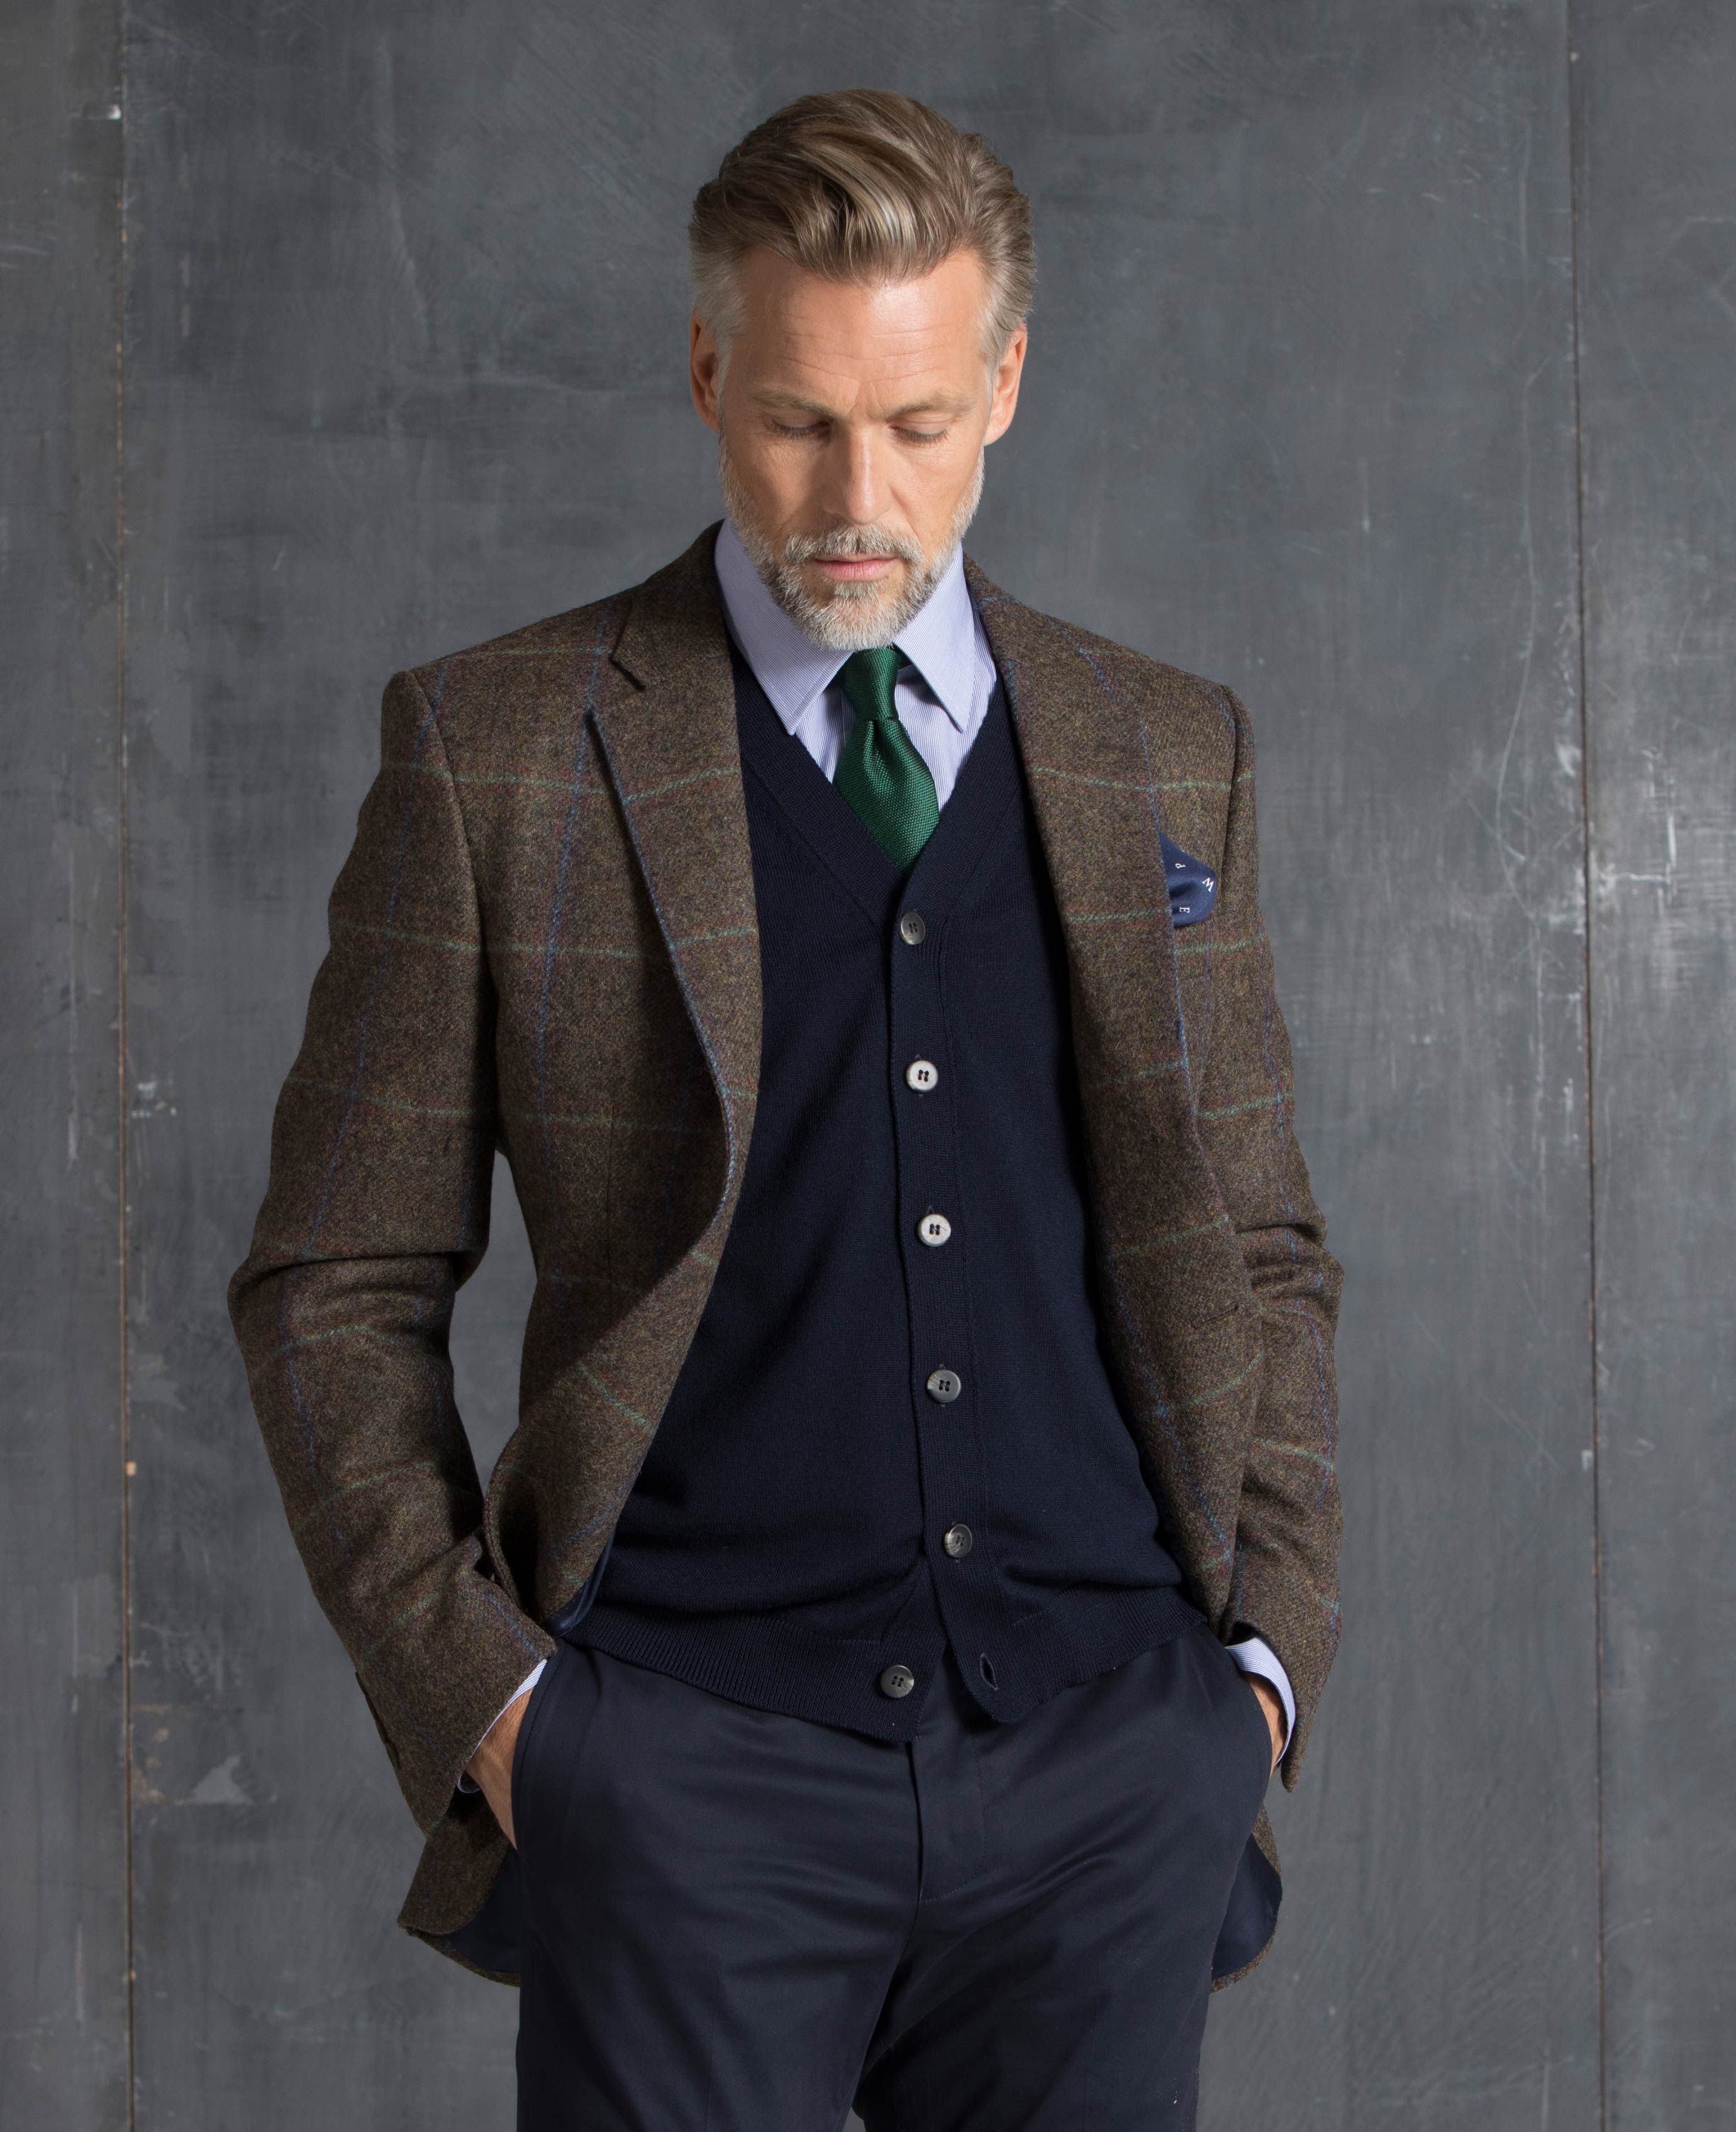 Check suit in wool, Blazers & Suits, Men's